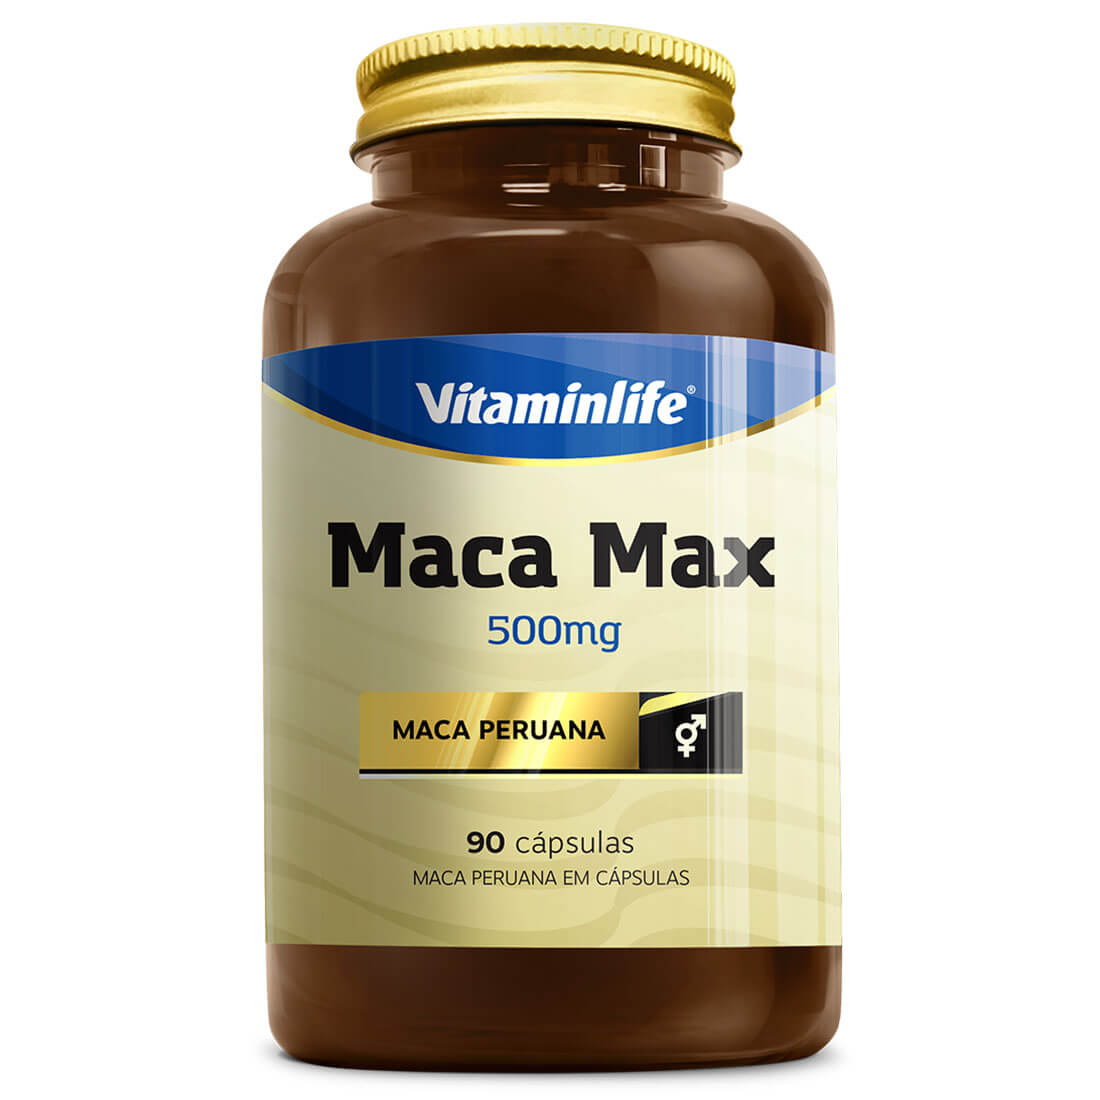 MACA MAX 500mg 90 CAPS - VITAMIN LIFE